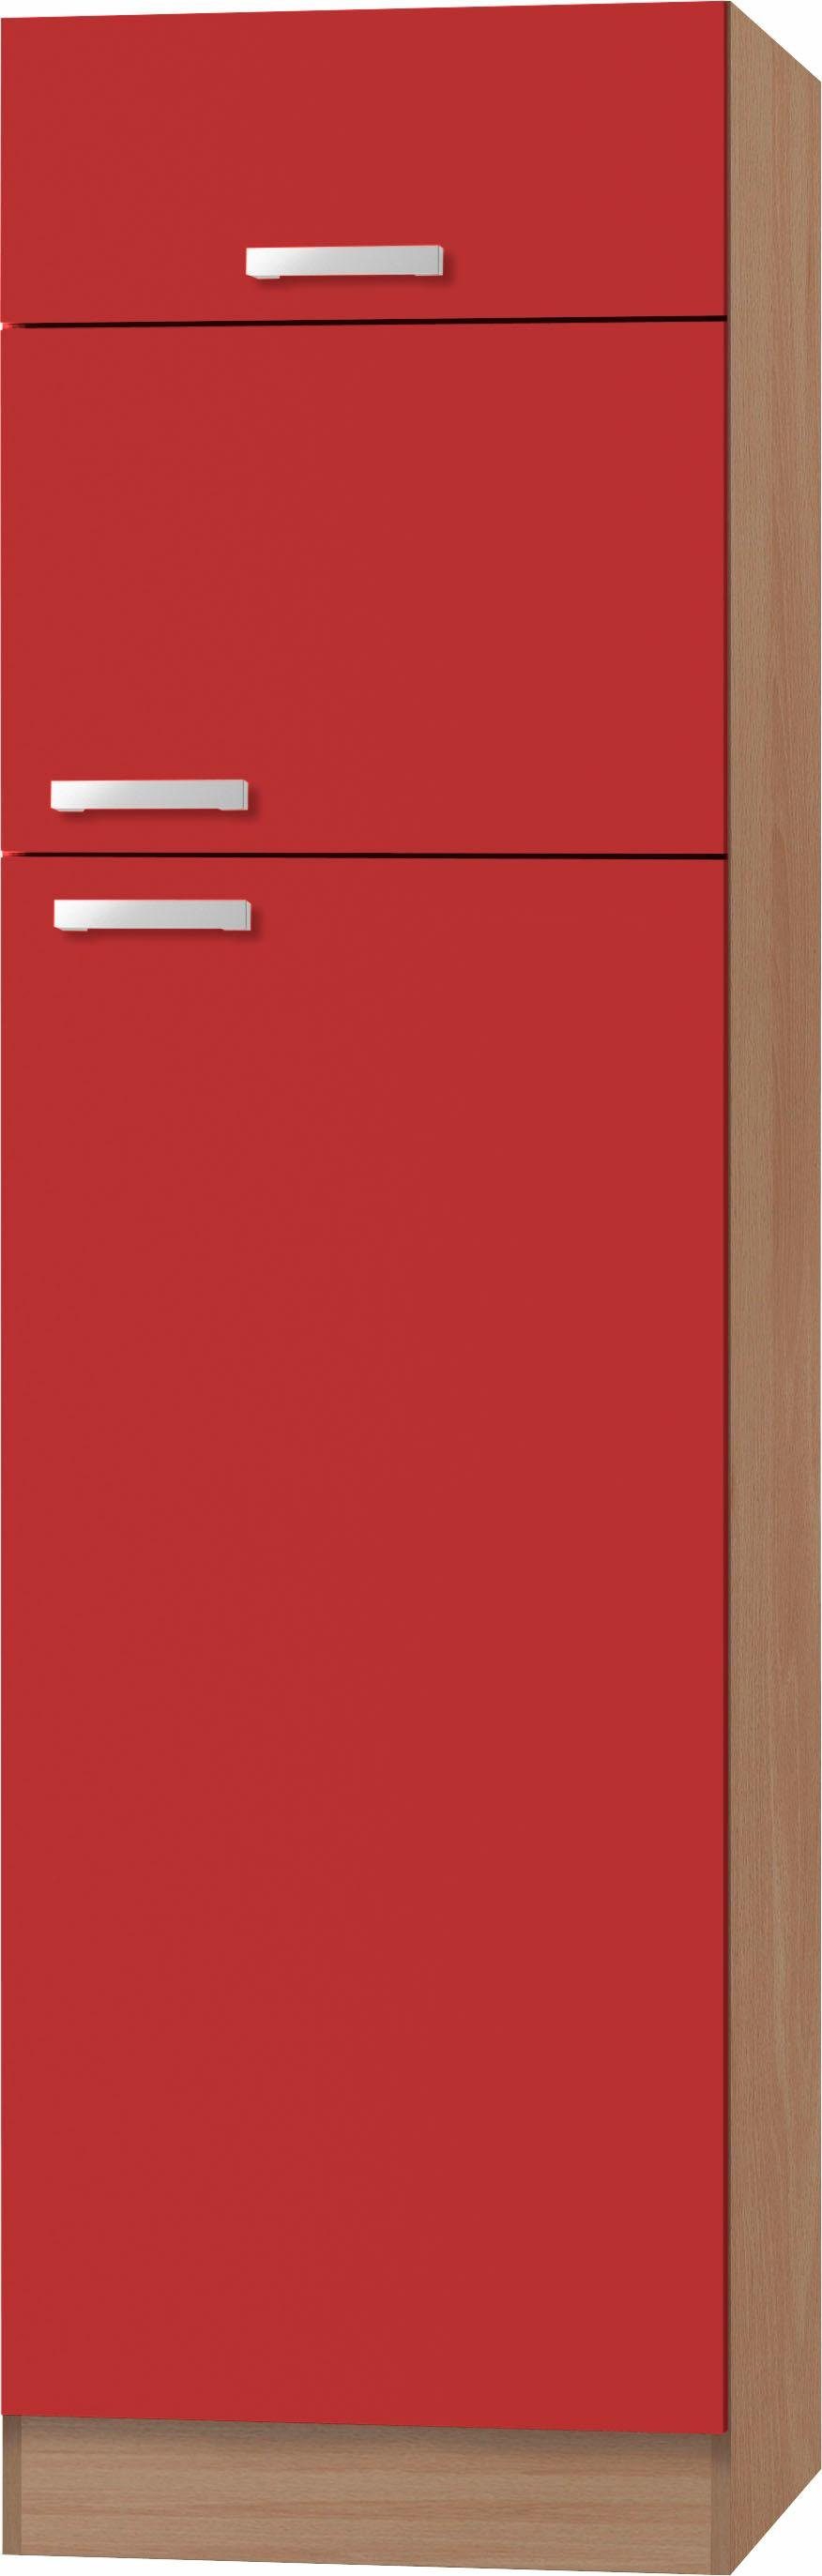 optifit koelkastombouw odense 60 cm breed, 207 cm hoog, voor koel-vriescombinaties maat 144 cm rood